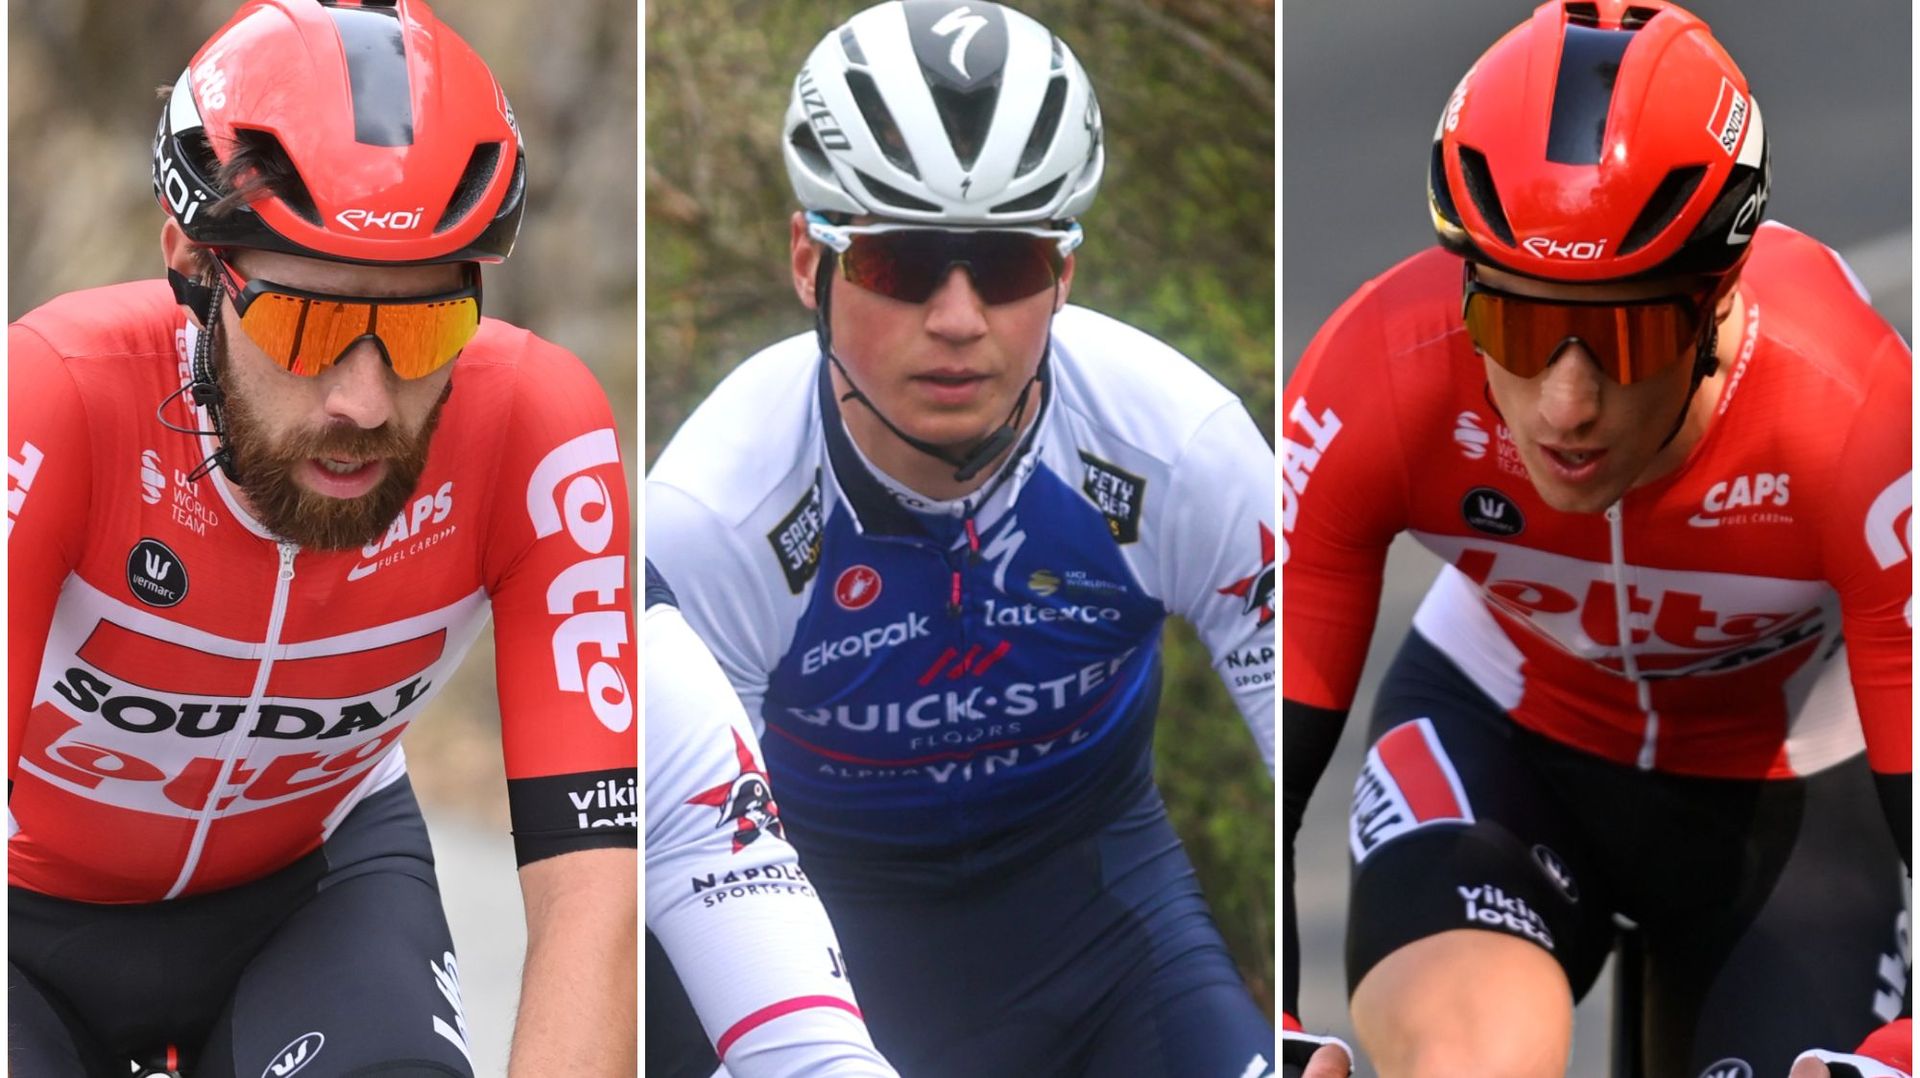 Cyclisme : Thomas De Gendt (à gauche), Mauri Vansevenant (au centre) et Sylvain Moniquet (à droite) font partie des 13 coureurs belges qui prennent le départ du Giro 2022.